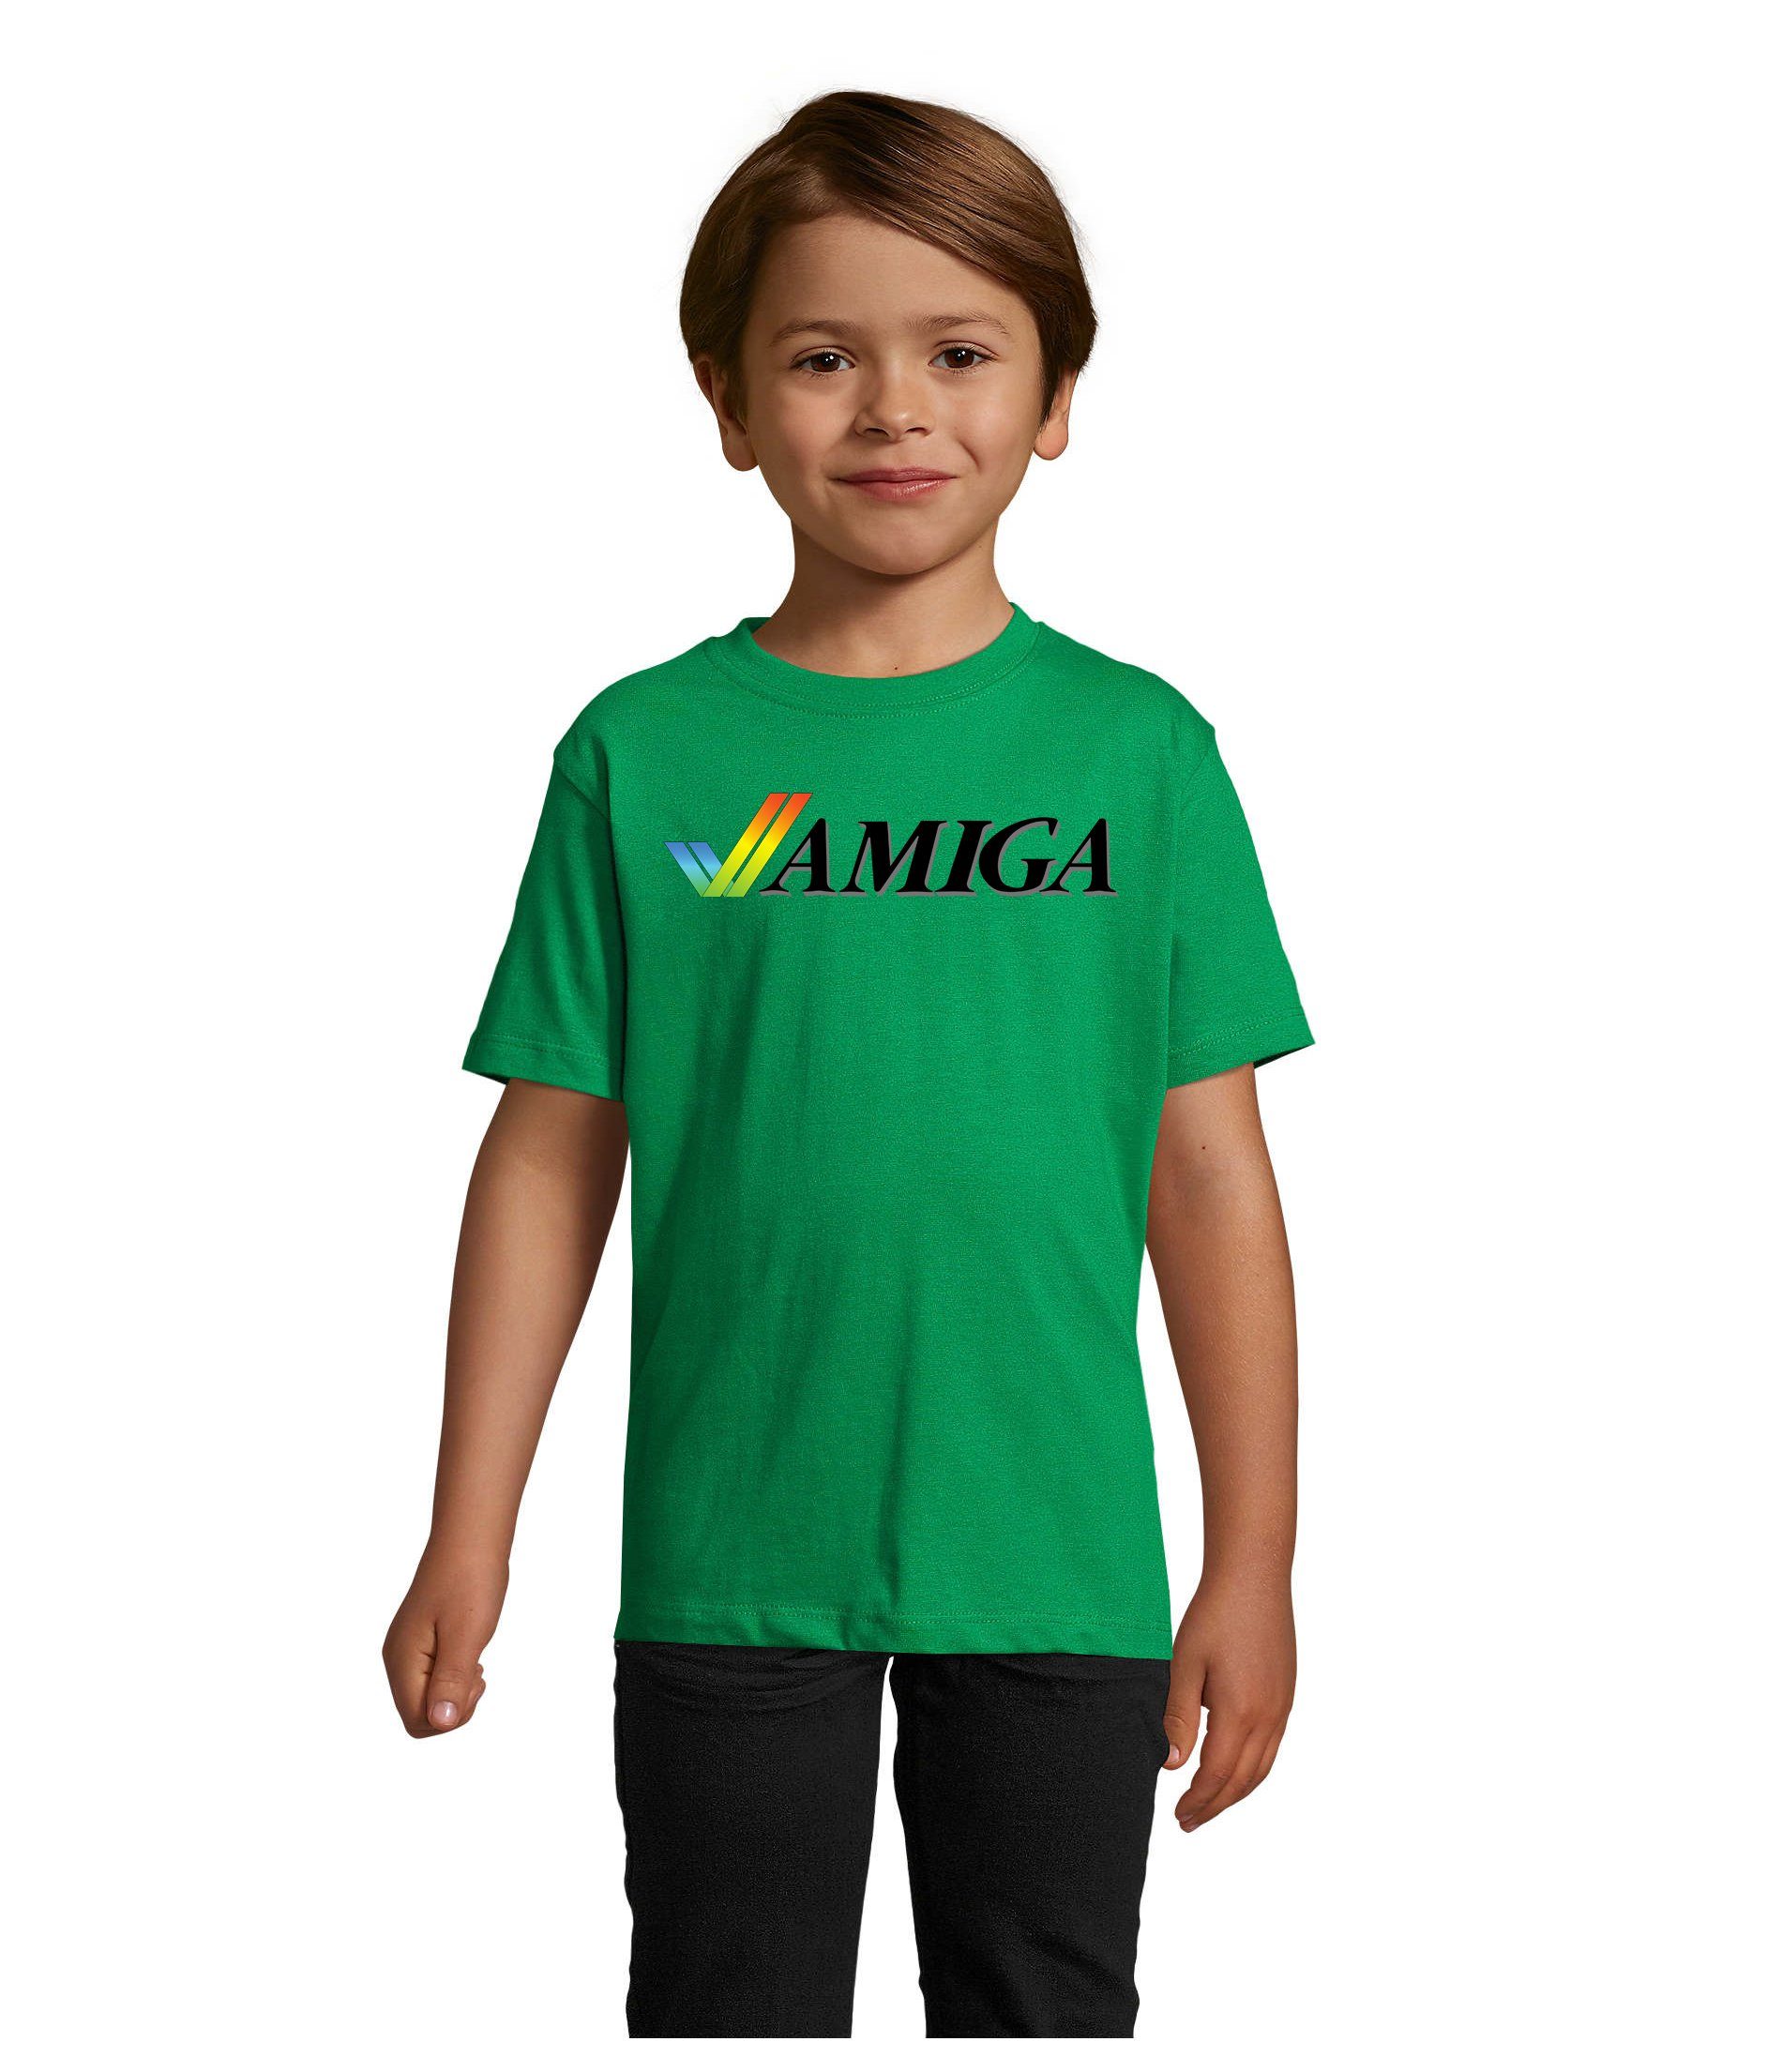 Blondie & Brownie T-Shirt Kinder Jungen & Mädchen Amiga Spiele Konsole Atari Commodore Nintendo Grün | T-Shirts